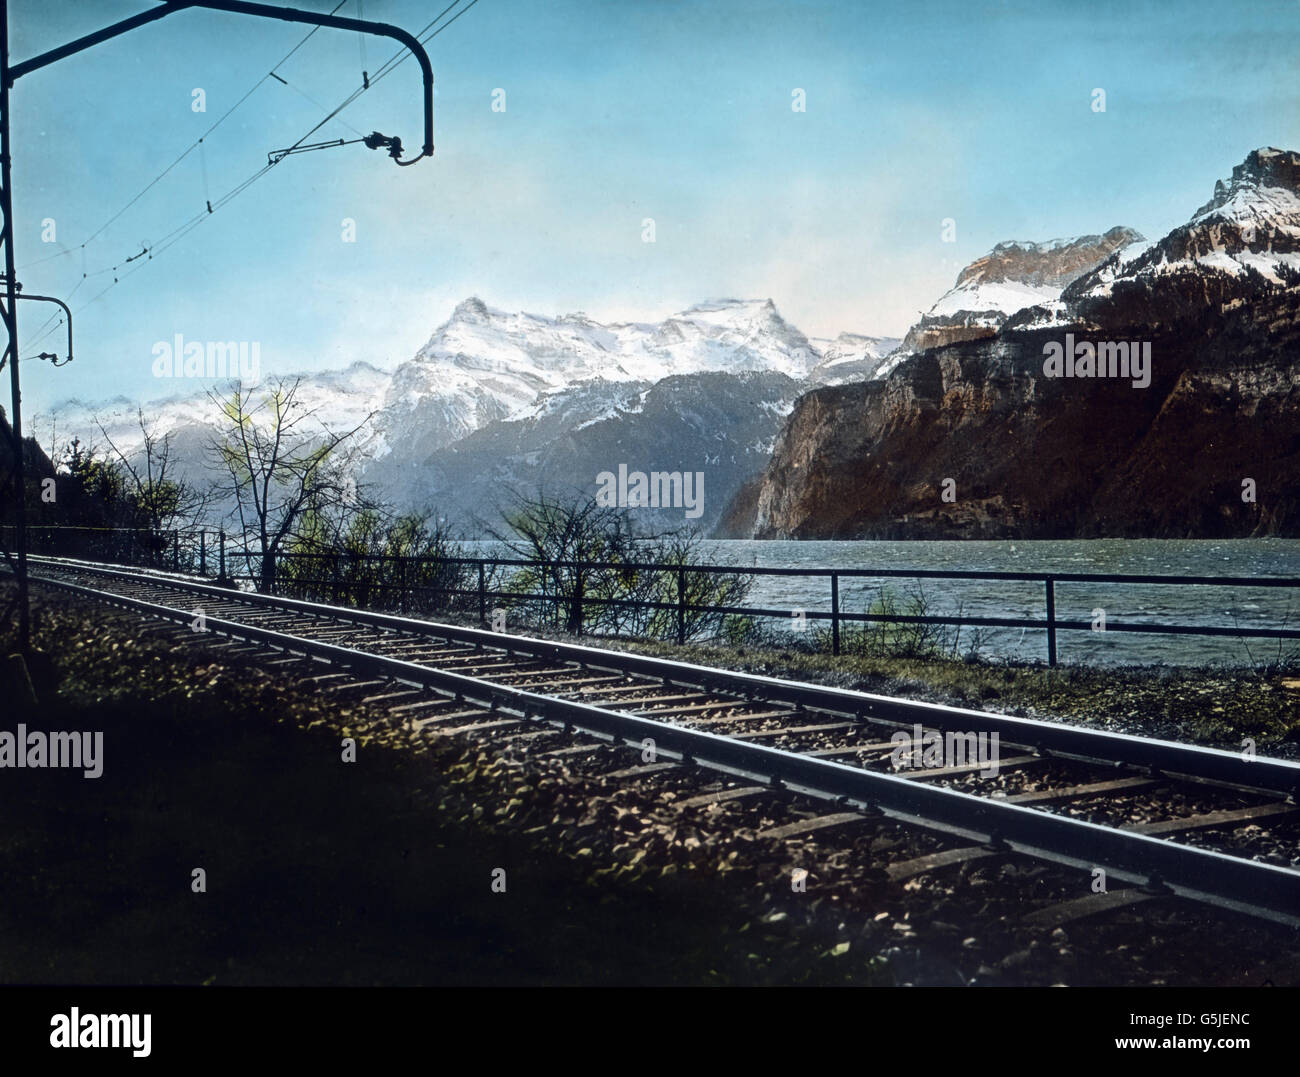 Die Gotthardstrecke am Urner See, Schweiz 1930er Jahre. Gotthard railway track at Lake Urn, Switzerland 1930s. Stock Photo